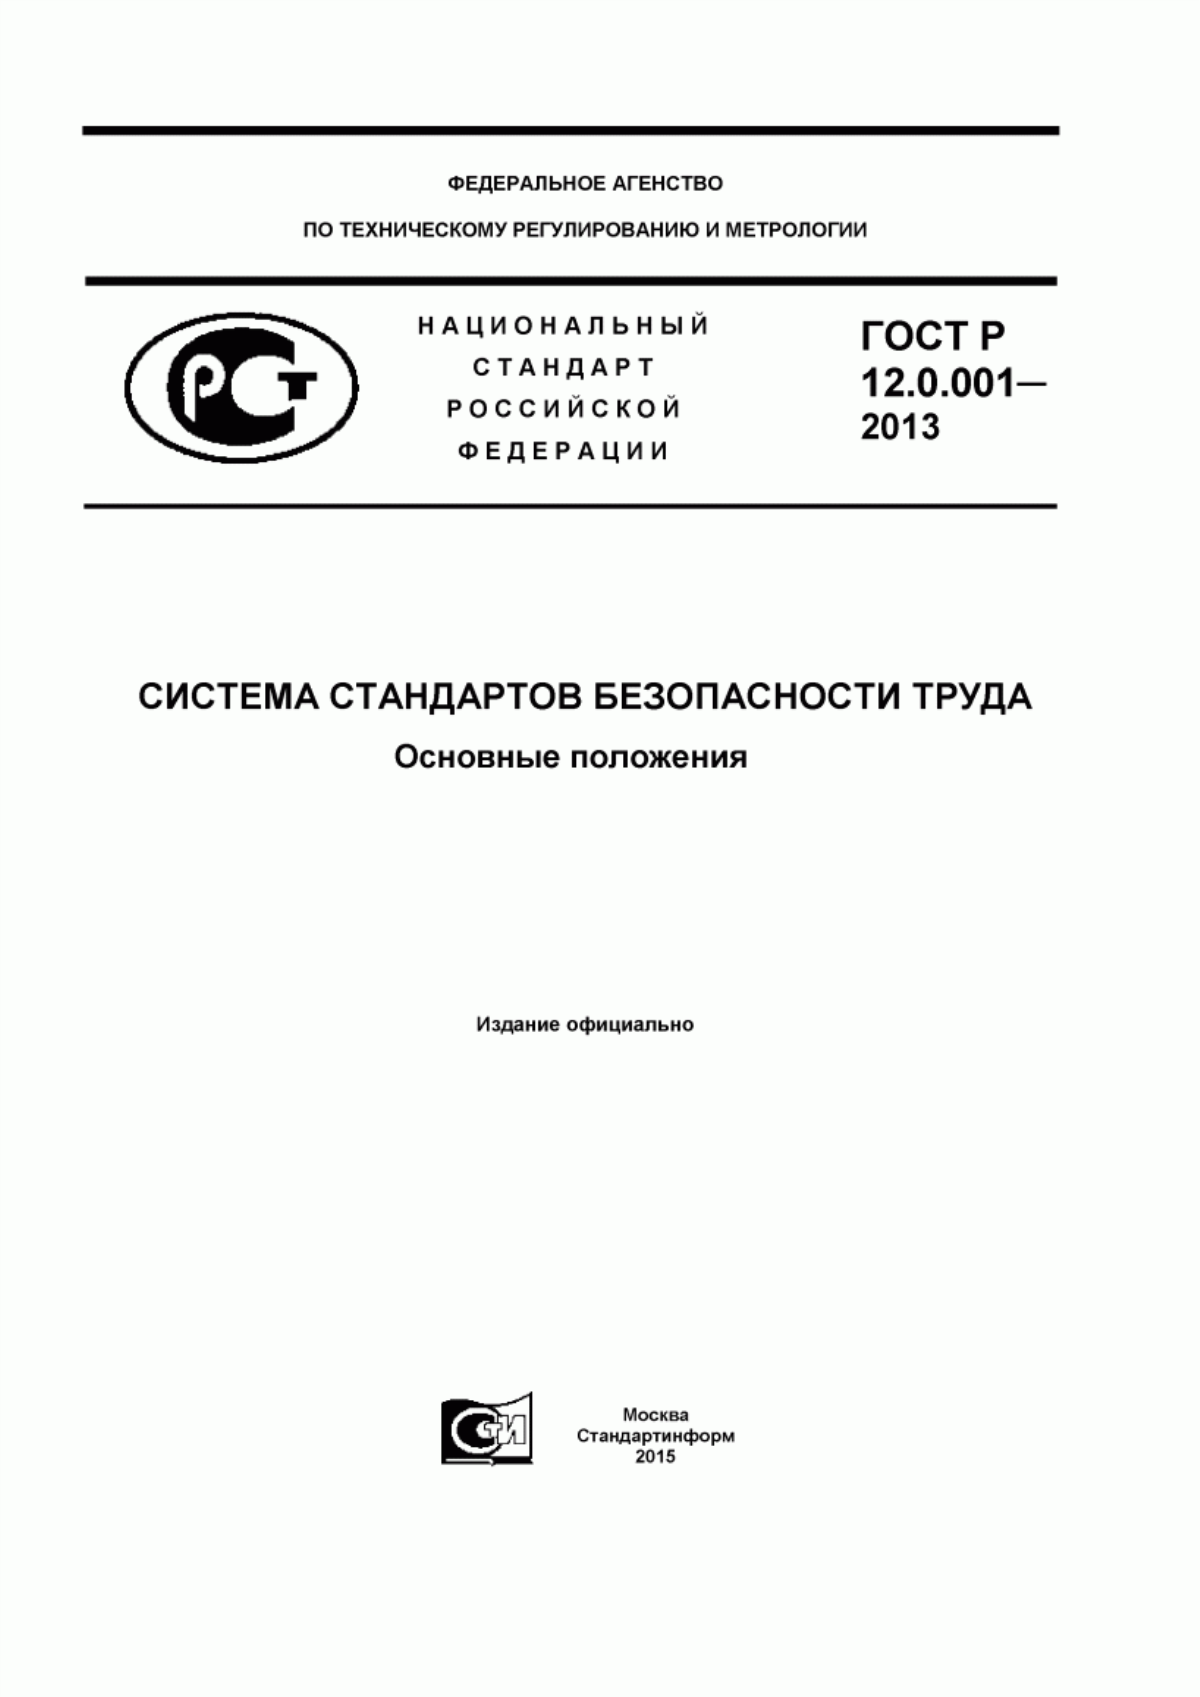 ГОСТ Р 12.0.001-2013 Система стандартов безопасности труда. Основные положения